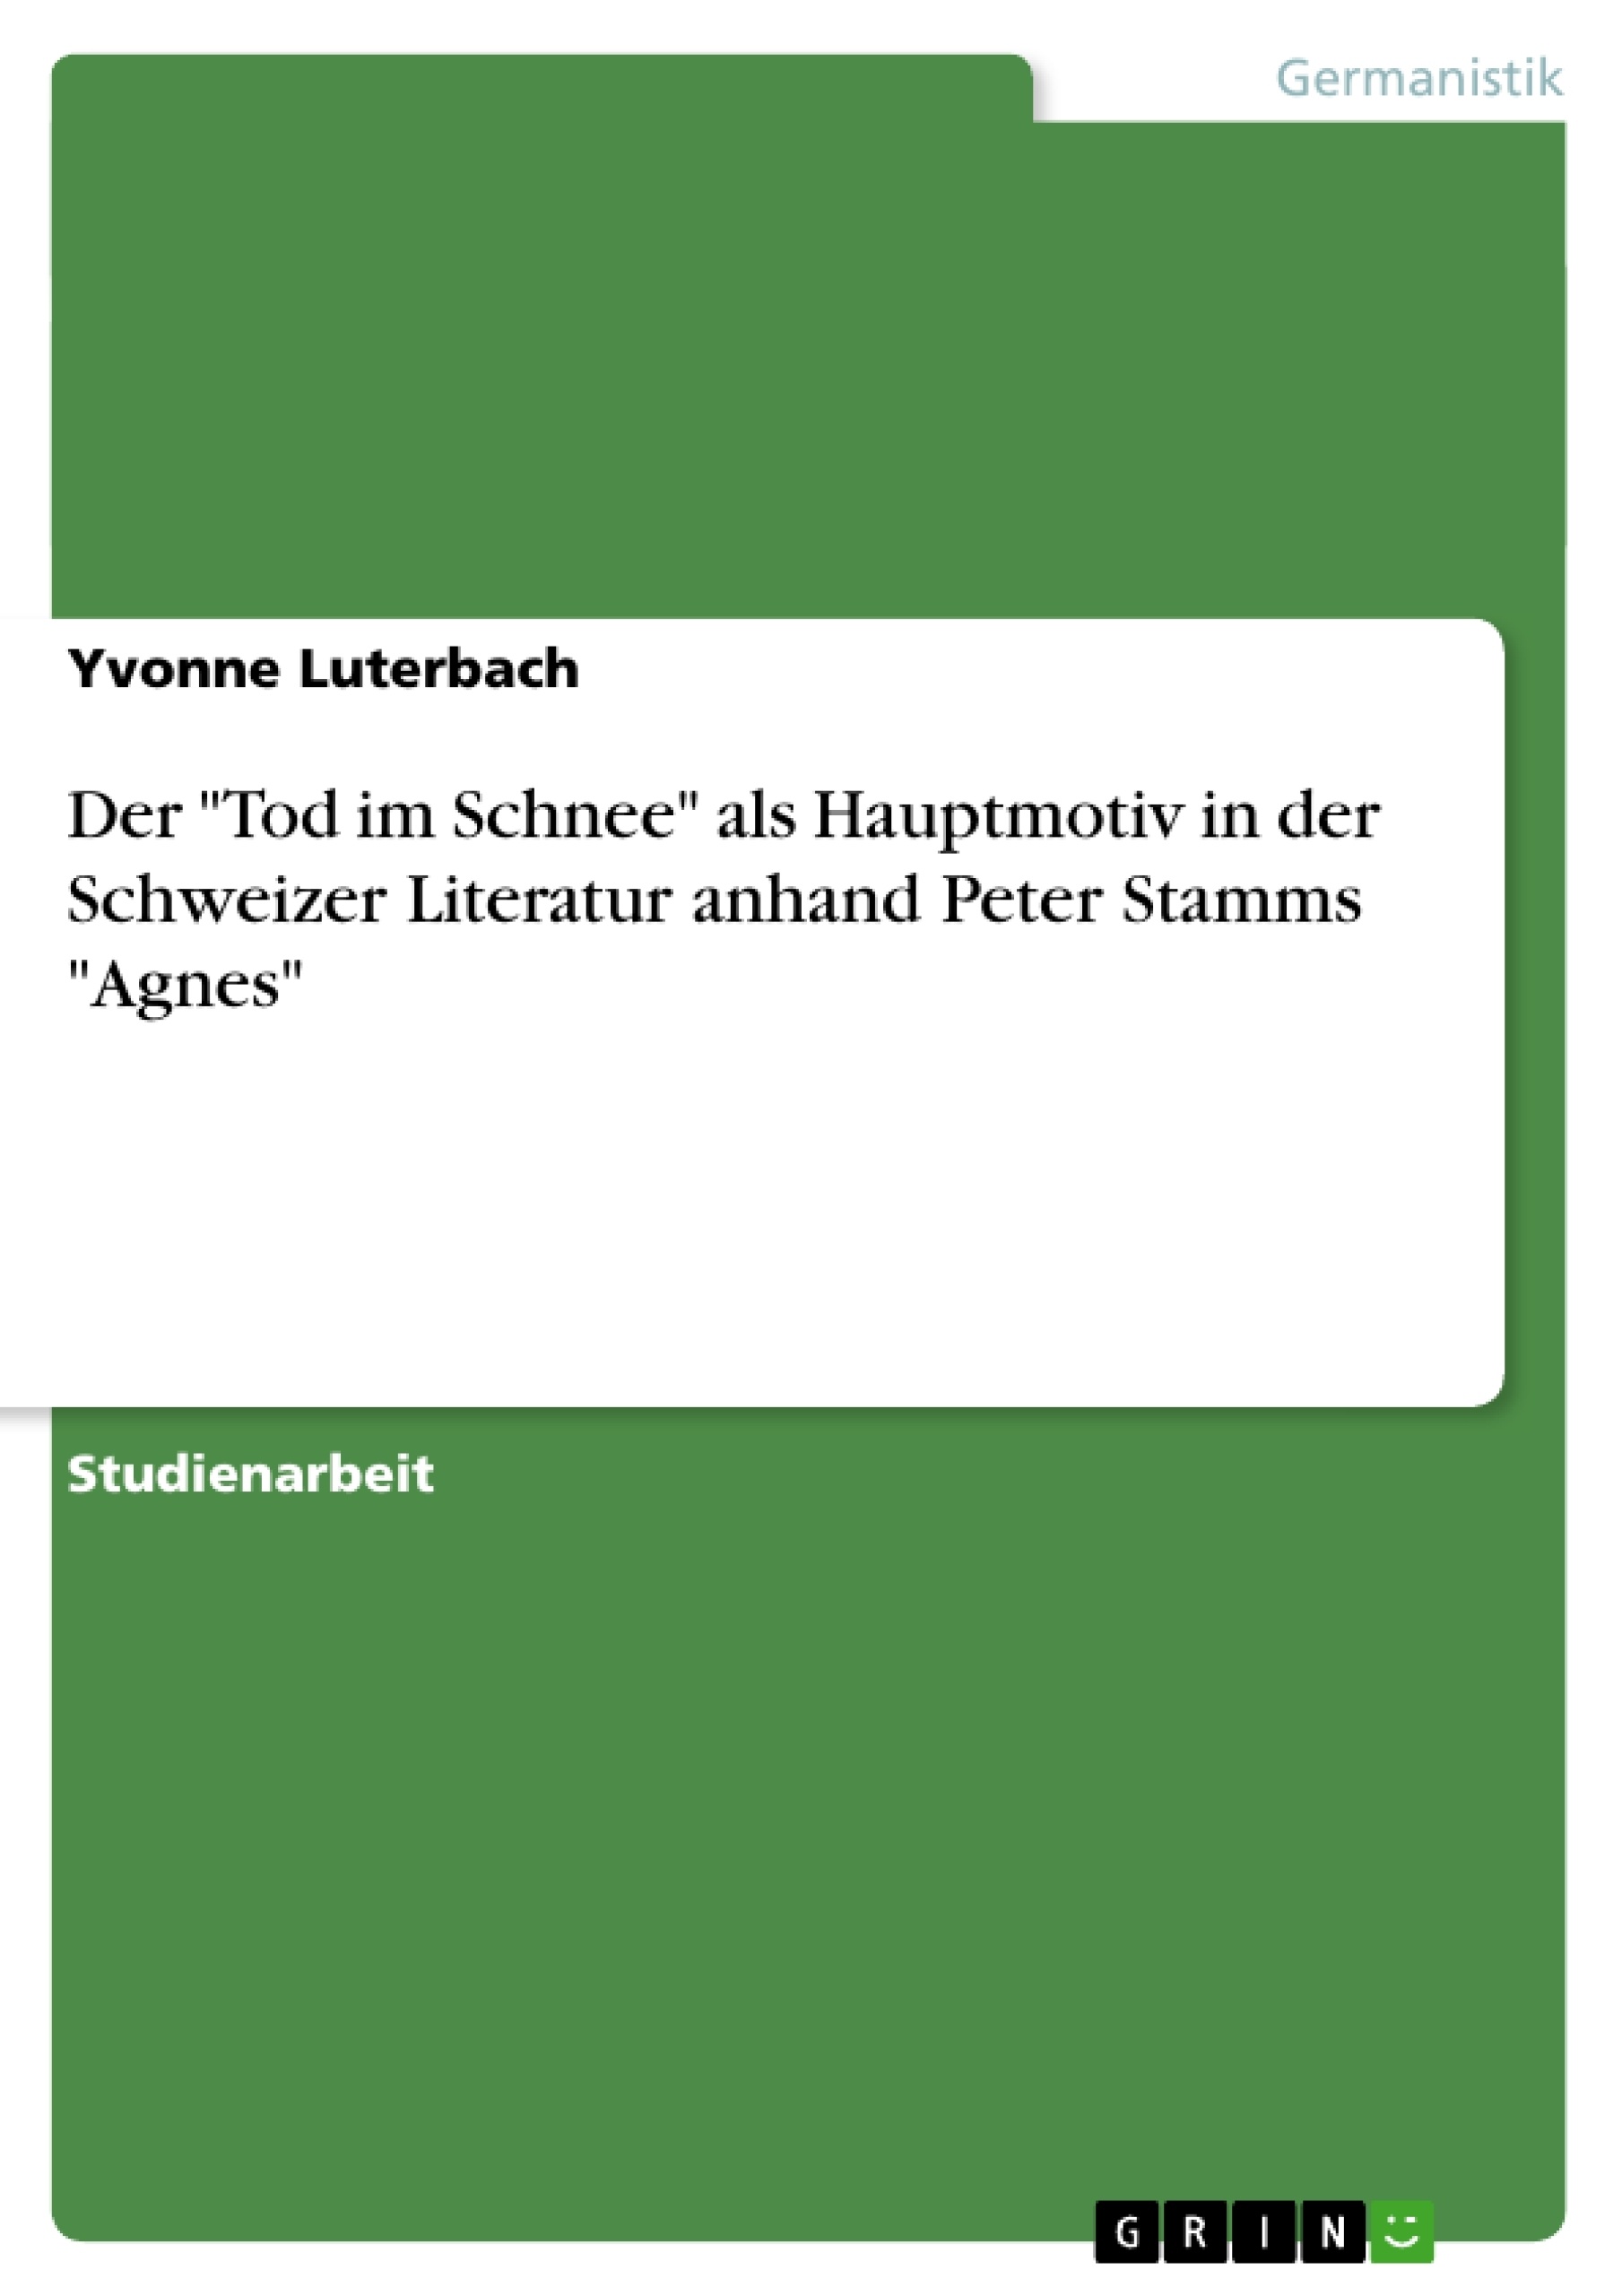 Title: Der "Tod im Schnee" als Hauptmotiv in der Schweizer Literatur anhand Peter Stamms "Agnes"